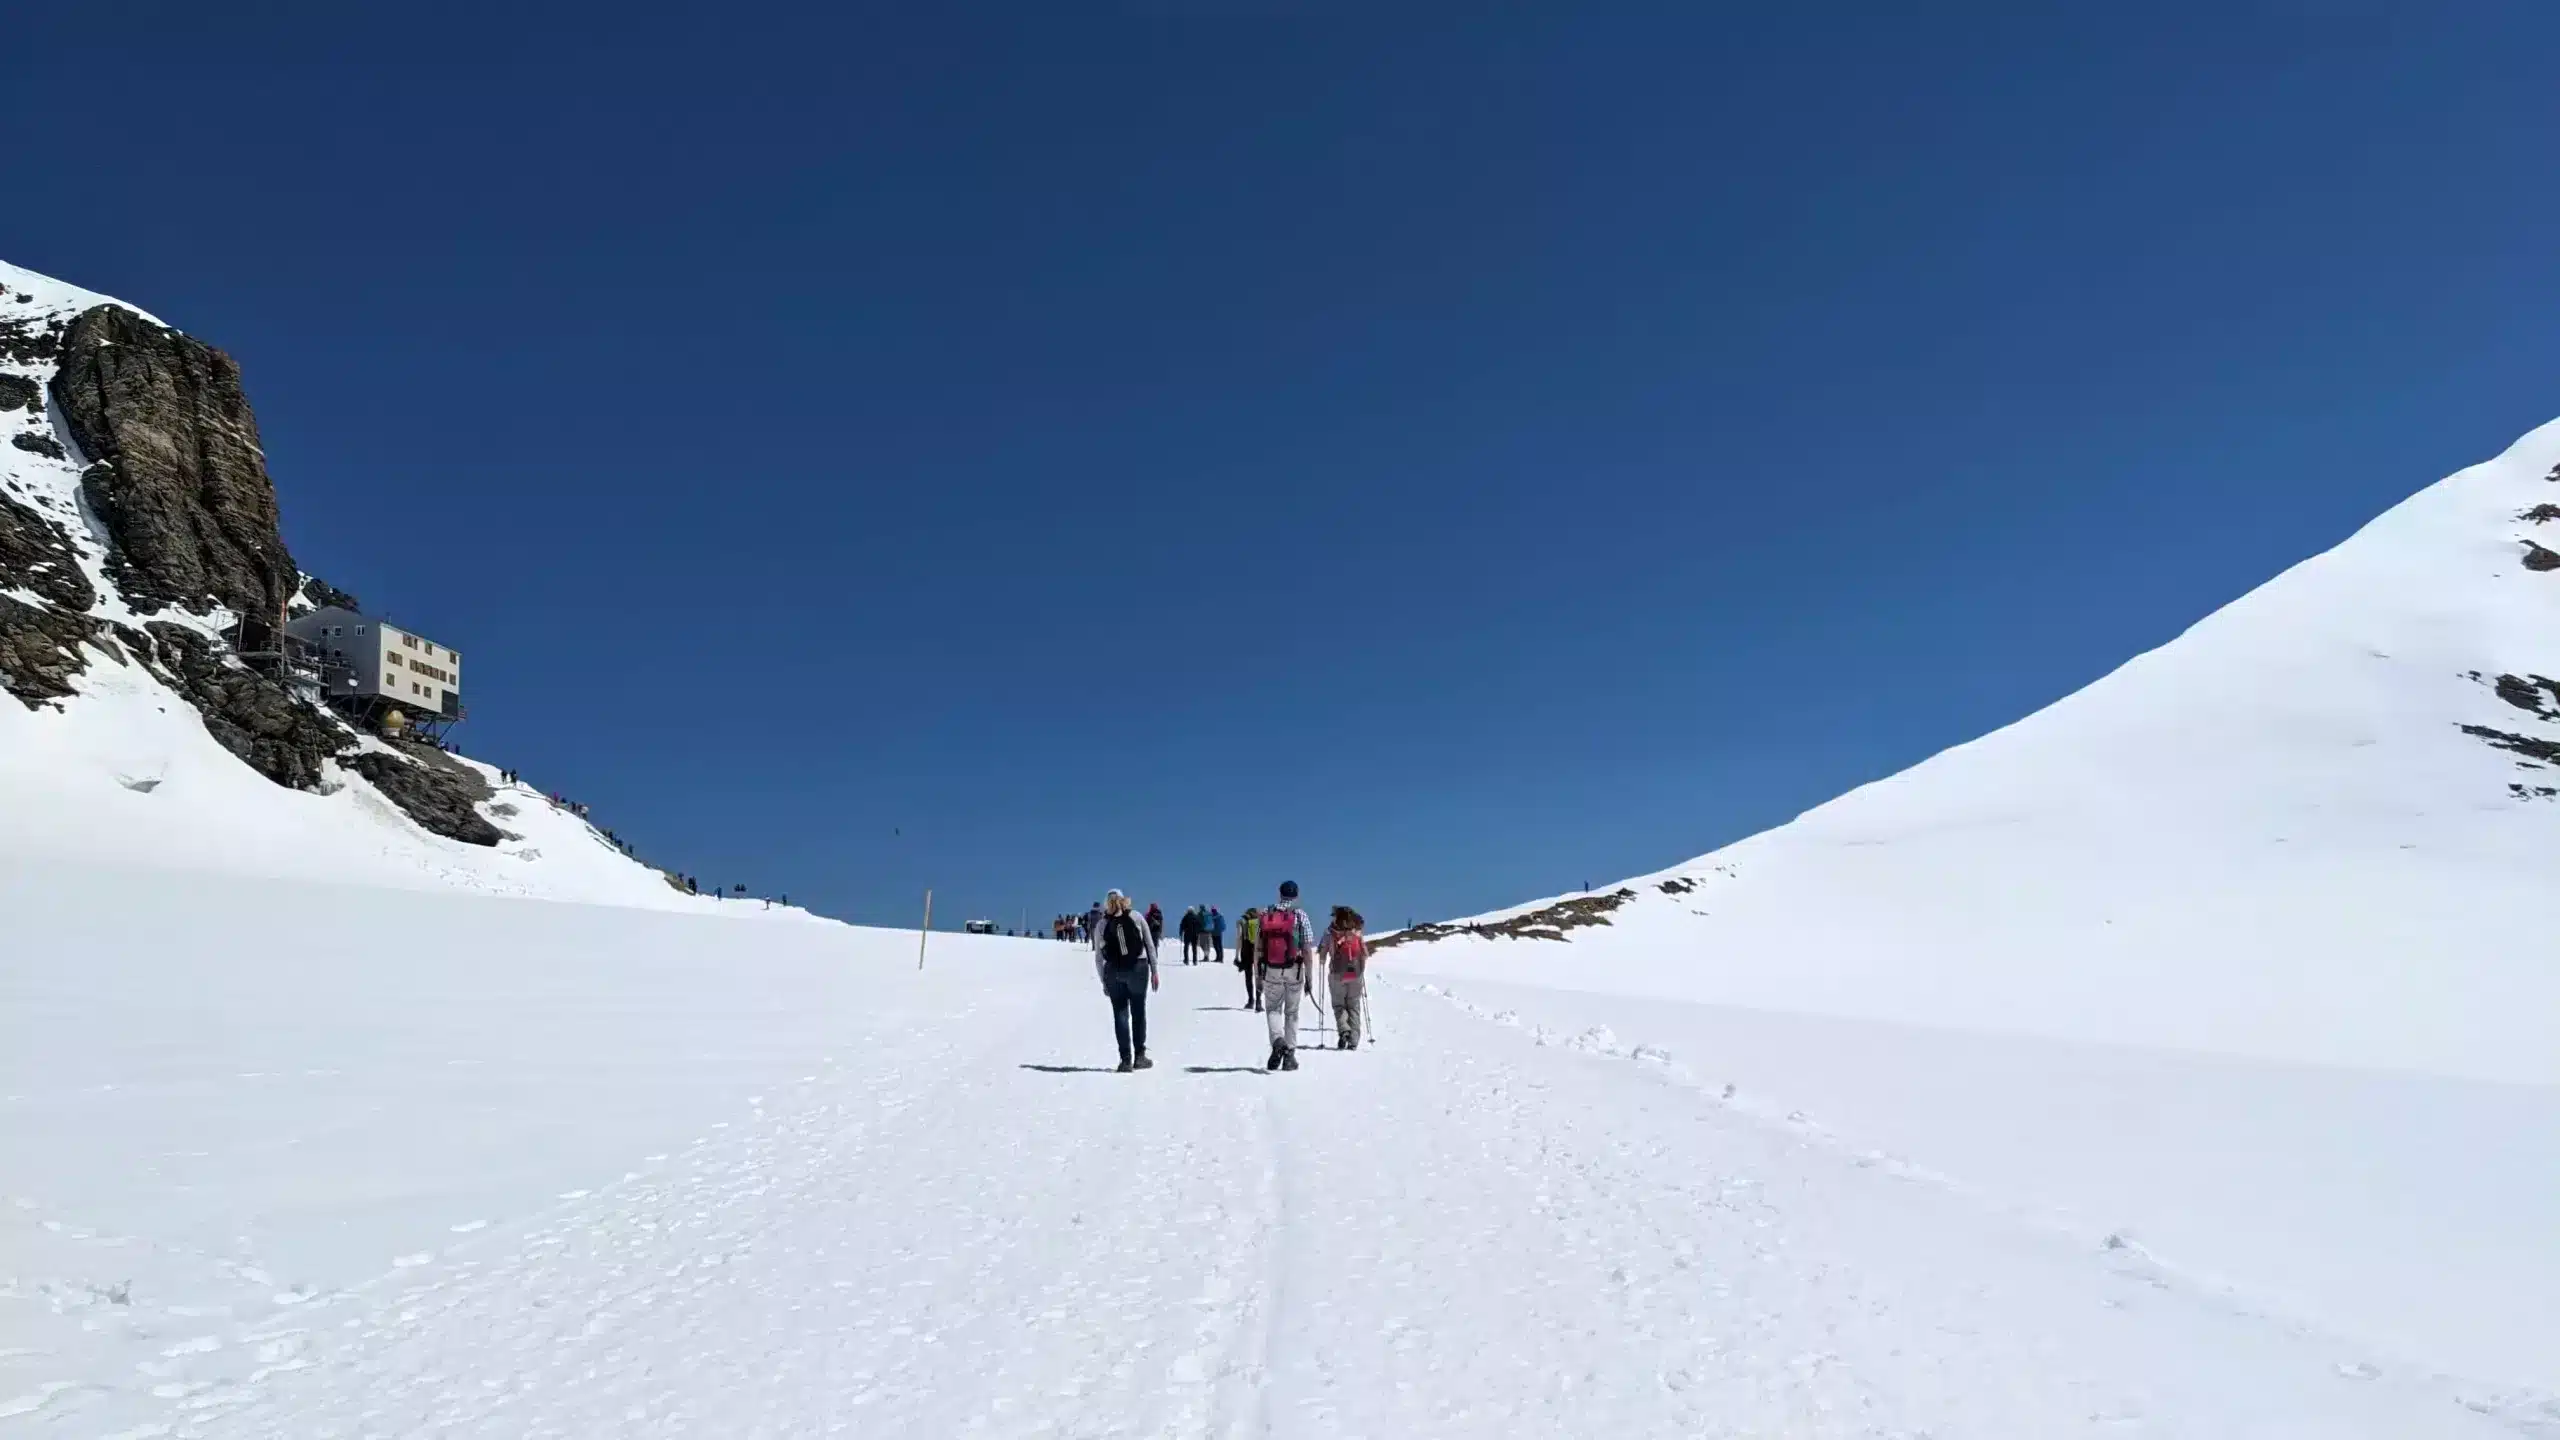 Wanderweg über ein Schneefeld vom Jungfraujoch zur Mönchsjochhütte. Links sieht man die Mönchsjochhütte.